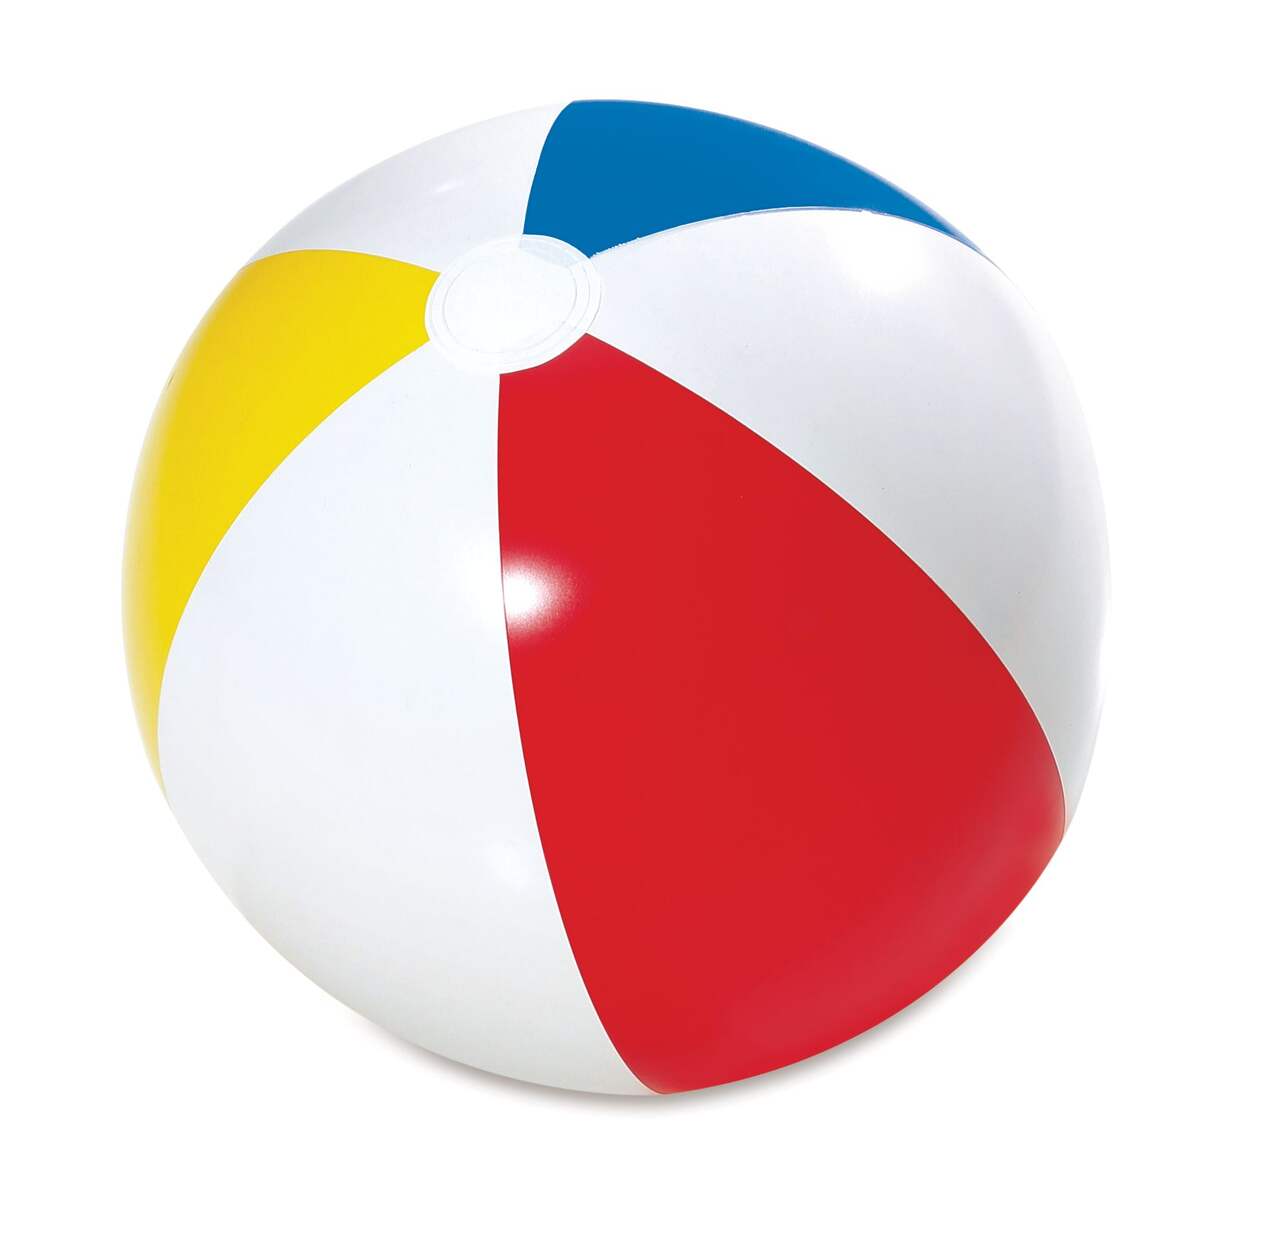 Ballon de plage gonflable | Briller